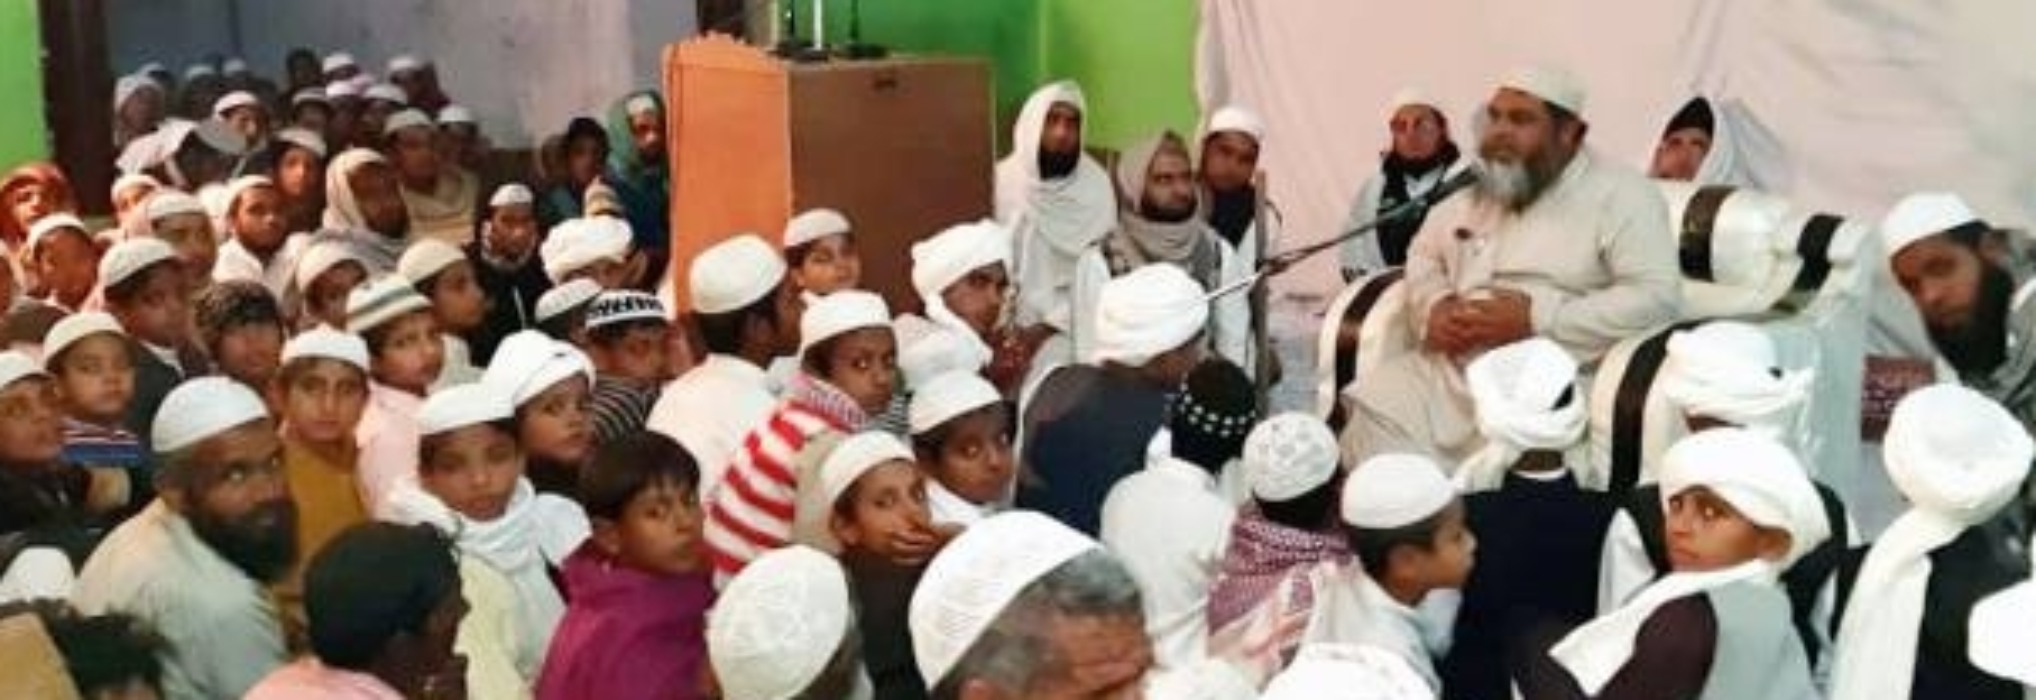 इस्लाम हिंसा की निंदा करते हुए दूसरे के प्रति सम्मान प्रोत्साहित करने वाला मजहब